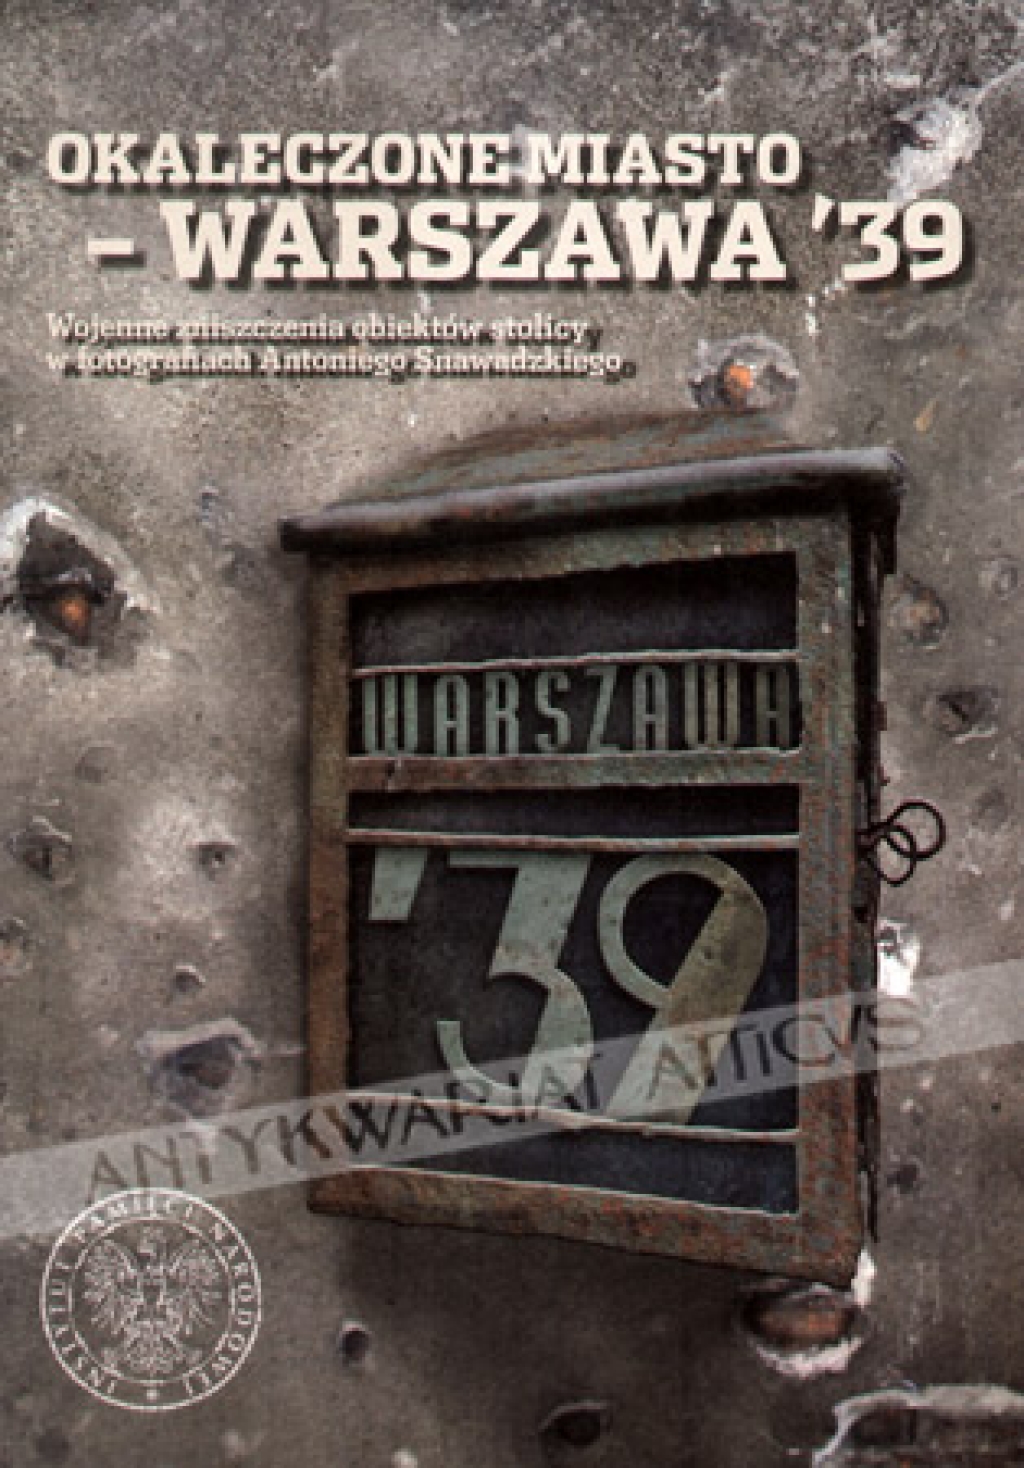 Okaleczone miasto - Warszawa '39. Wojenne zniszczenia obiektów stolicy w fotografiach Antoniego Snawadzkiego